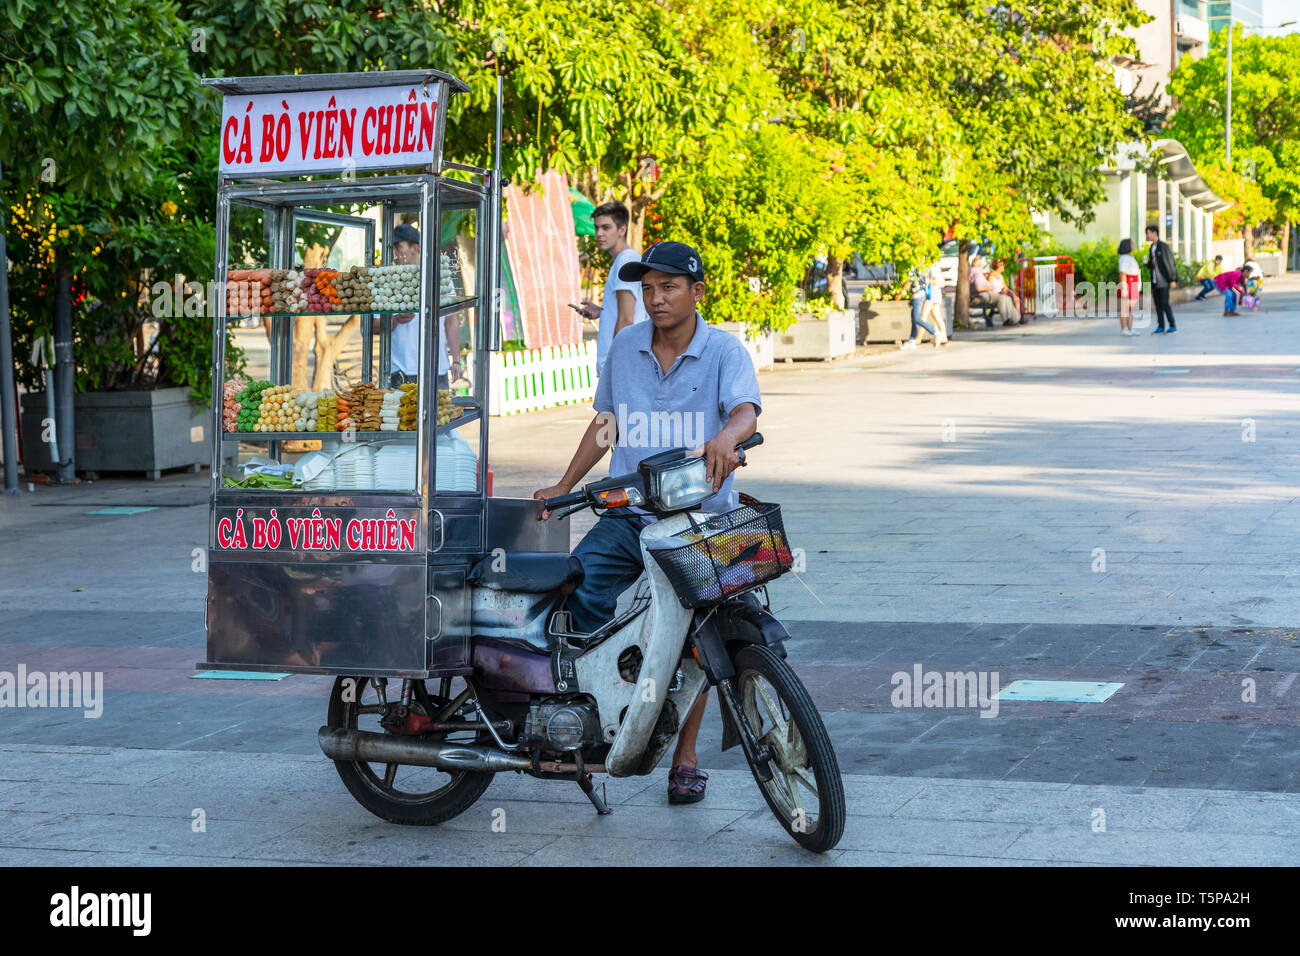 Distributeur alimentaire mobile à l'arrière d'une moto, Ho Chi Minh City, Vietnam, Asie Banque D'Images